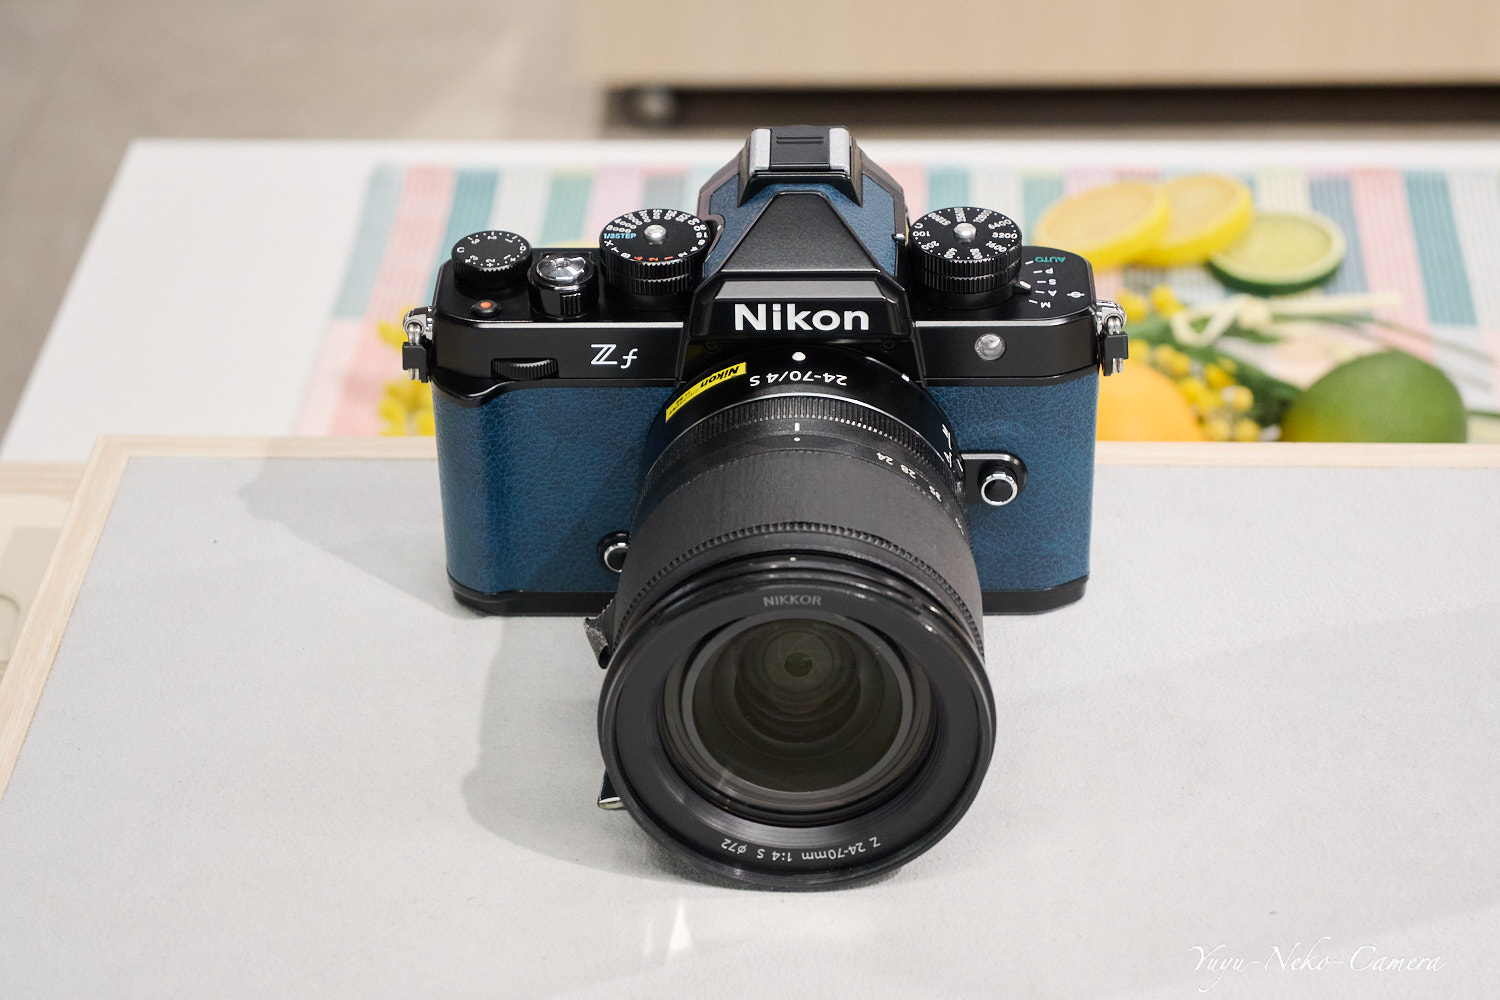 Nikon Zf + NIKKOR Z 24-70mm f/4 S